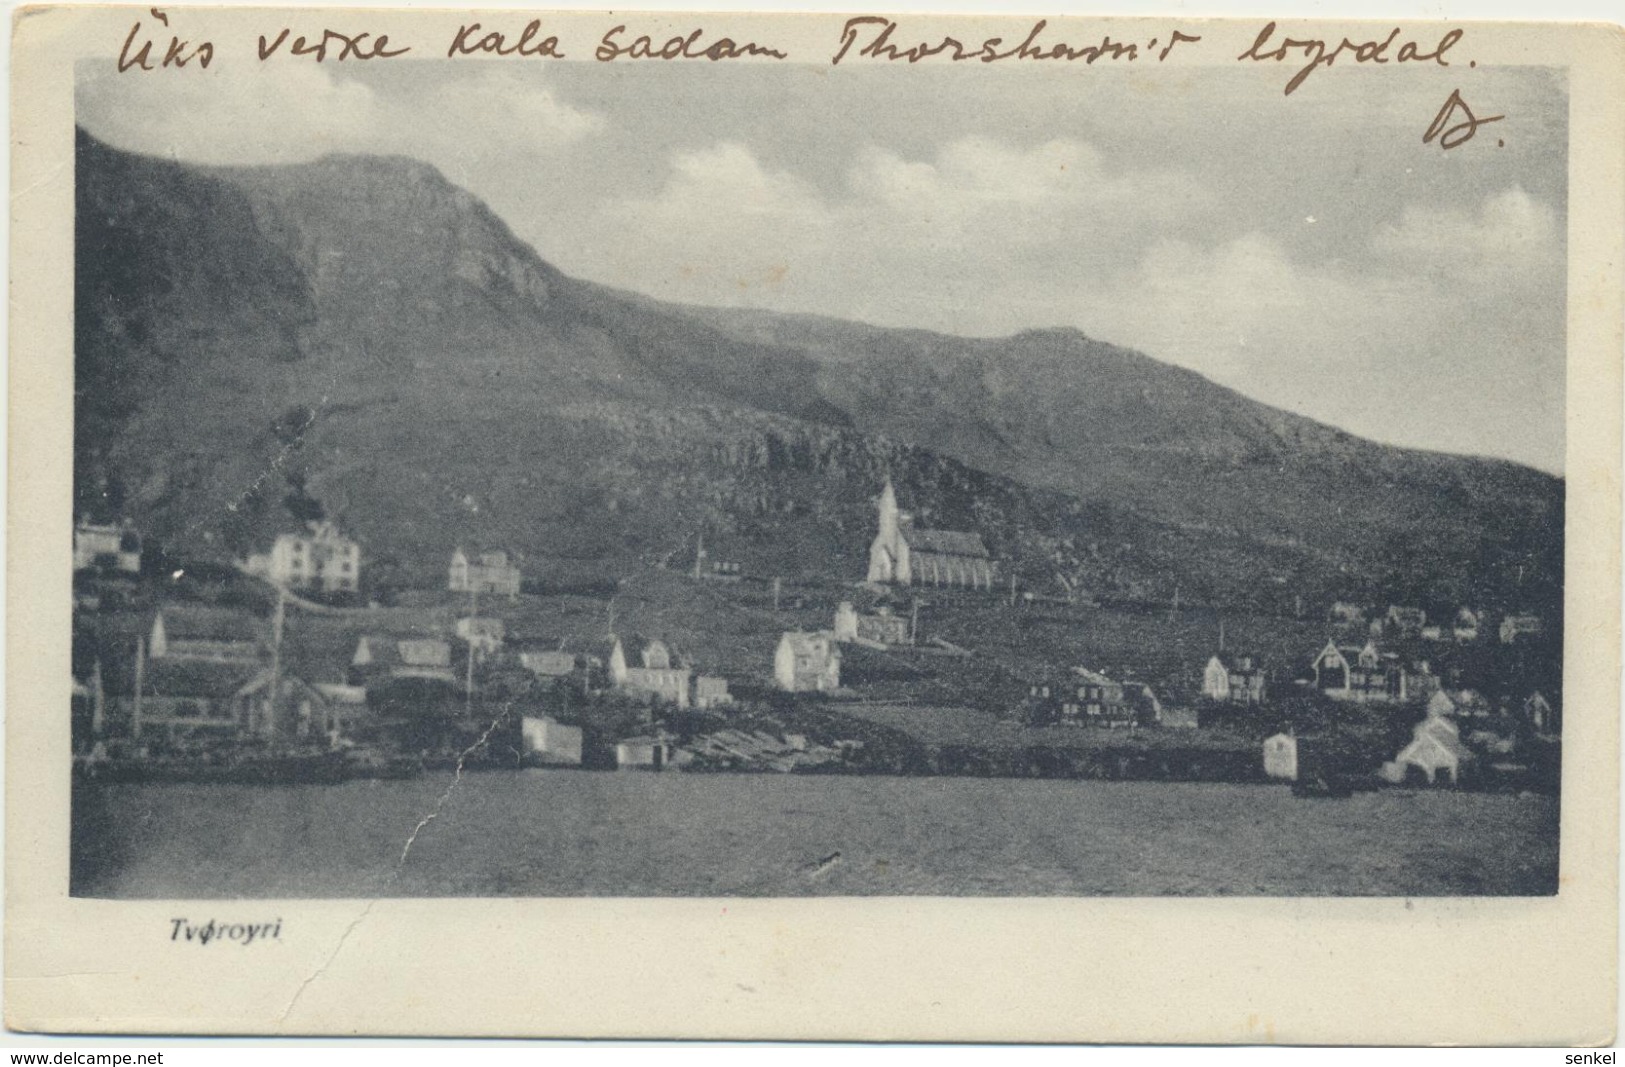 78-451 Faroe Islands - Faroe Islands